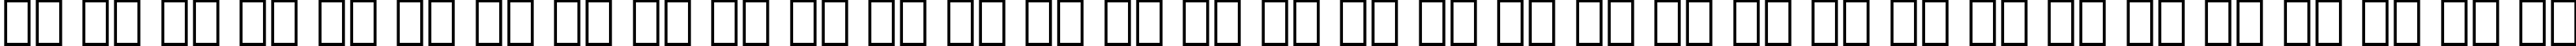 Пример написания русского алфавита шрифтом Folio Medium BT